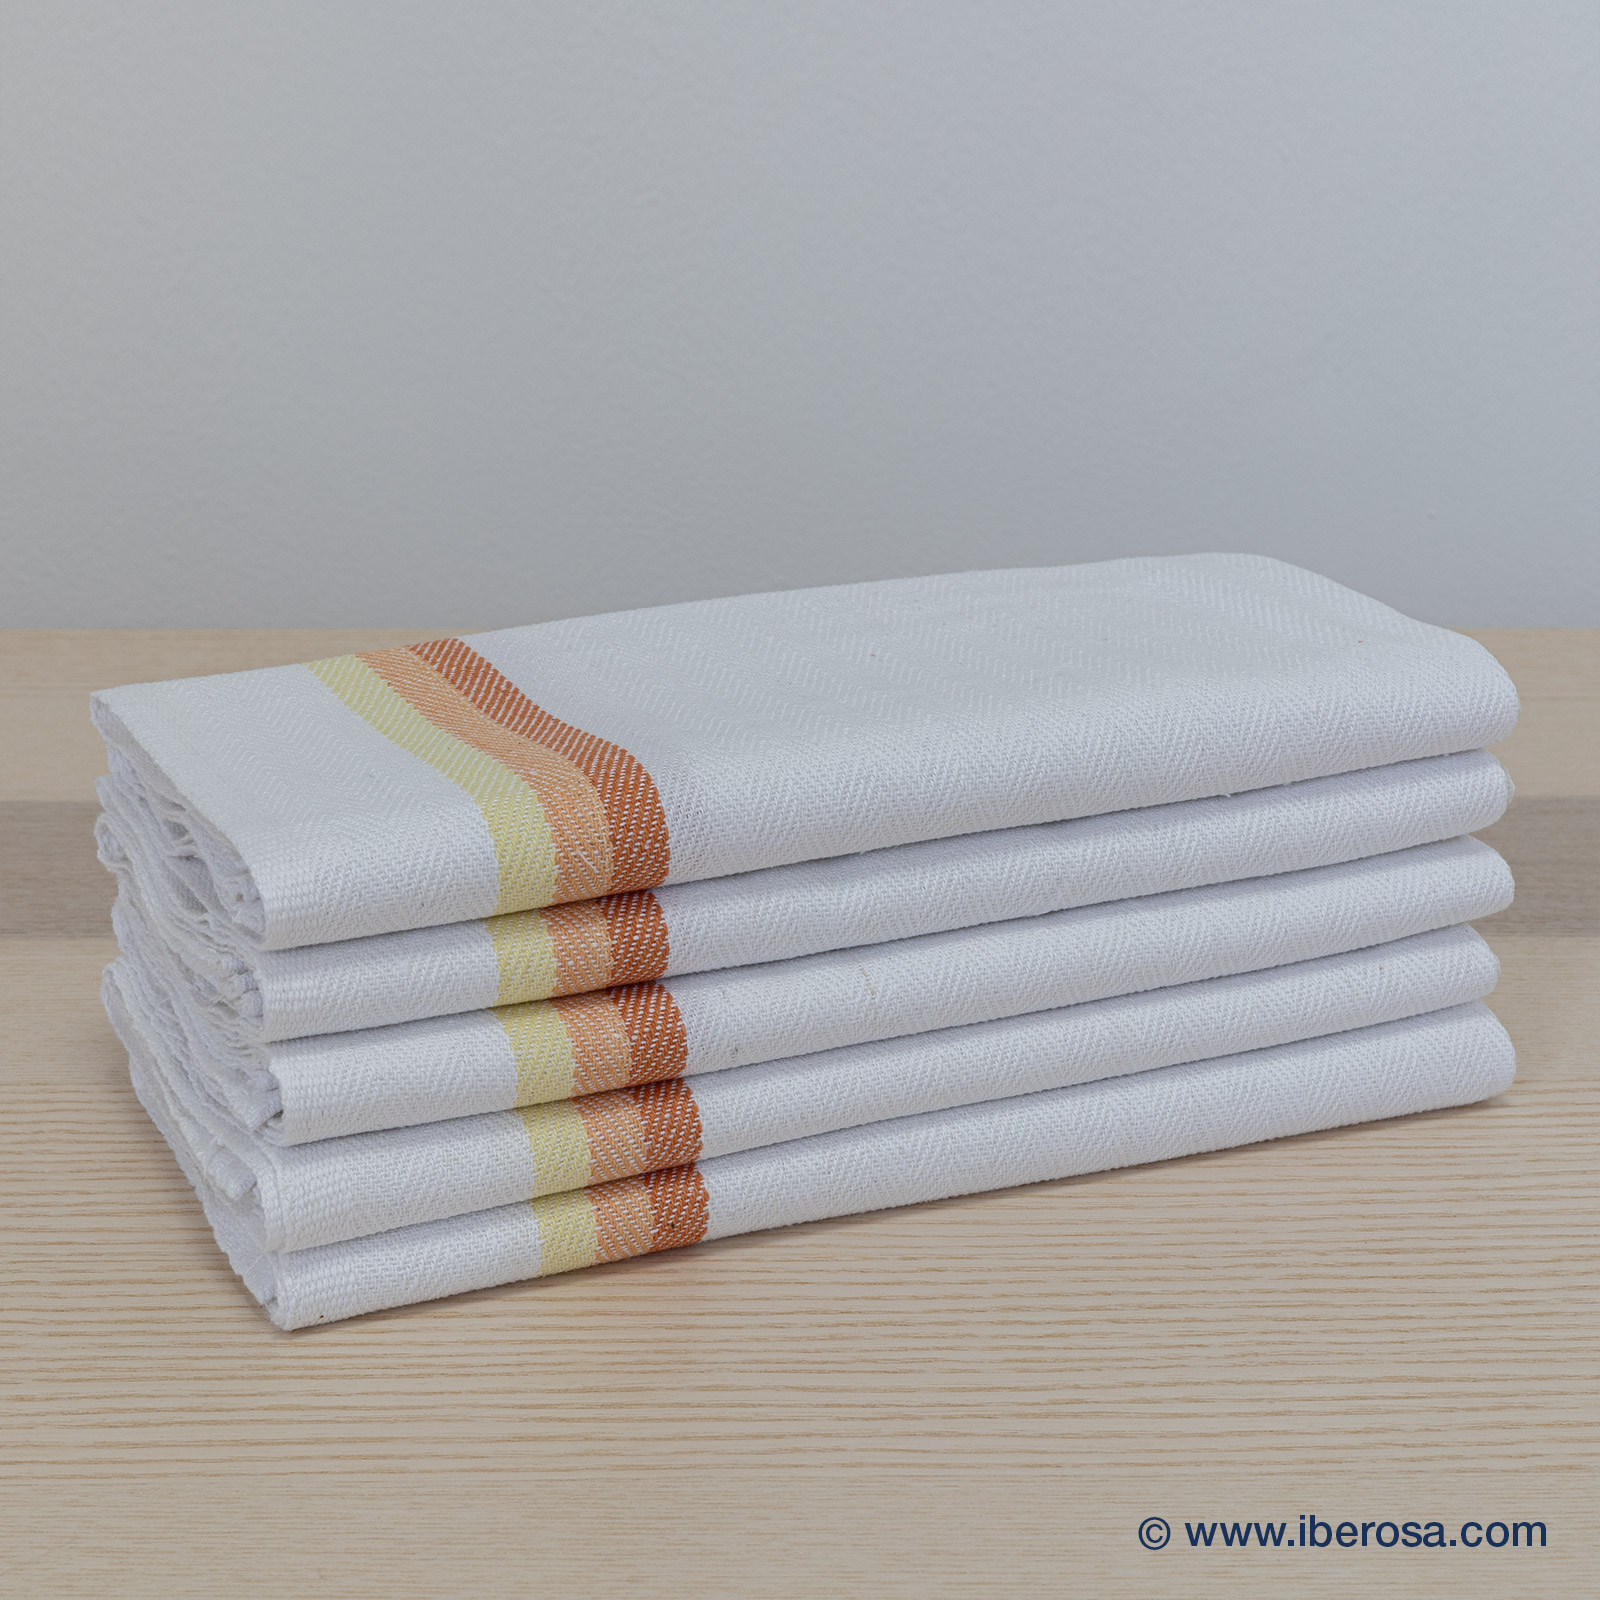 iberosa-textiles-rumbo-toallas-pano-cocina-rayas-naranjas-01